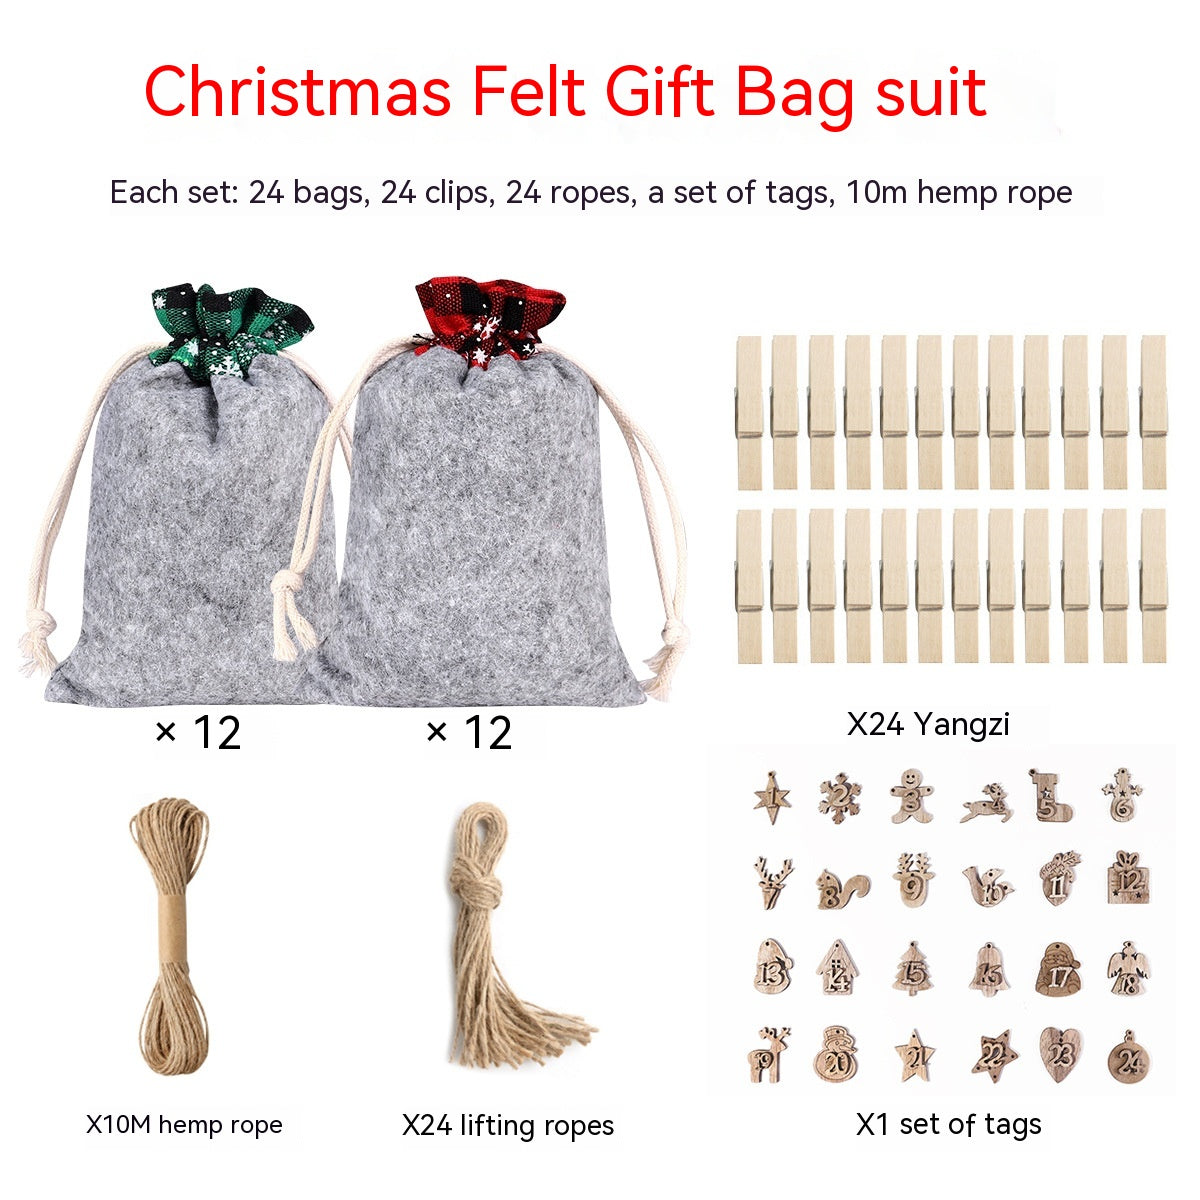 Felt Cloth Christmas Gift Bag Decoration Supplies Suit